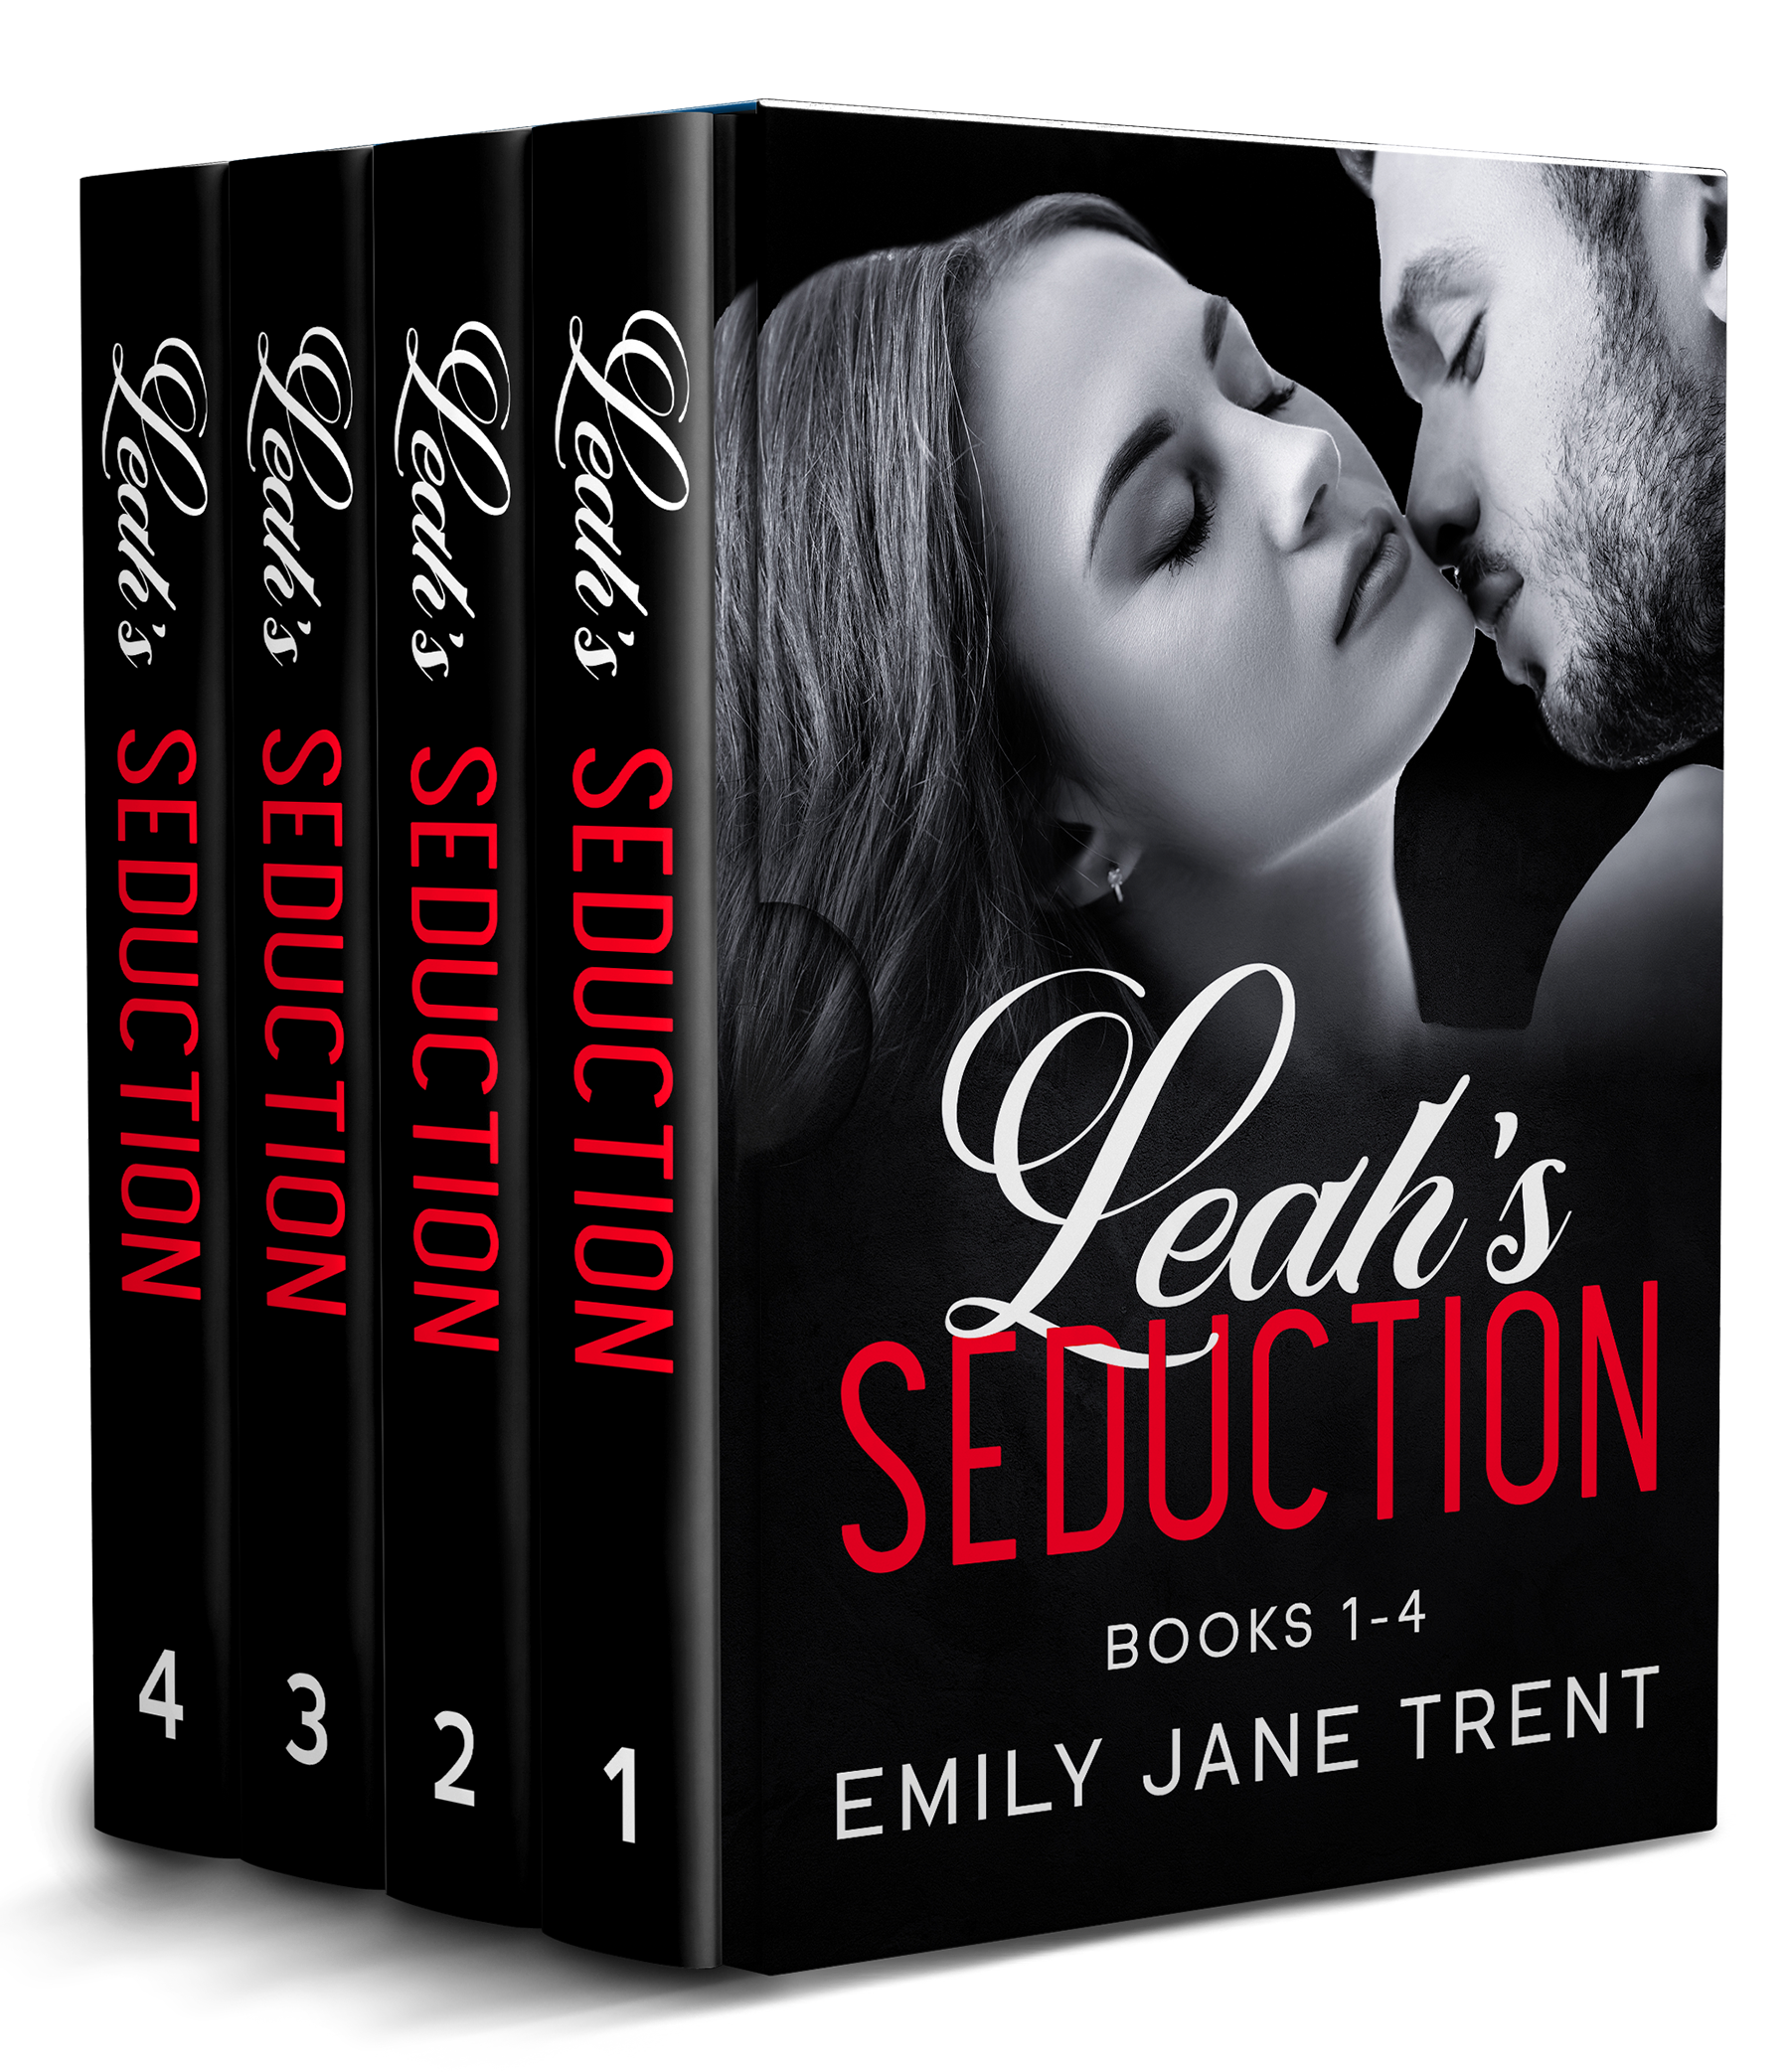 Leah's Seduction Books 1-4